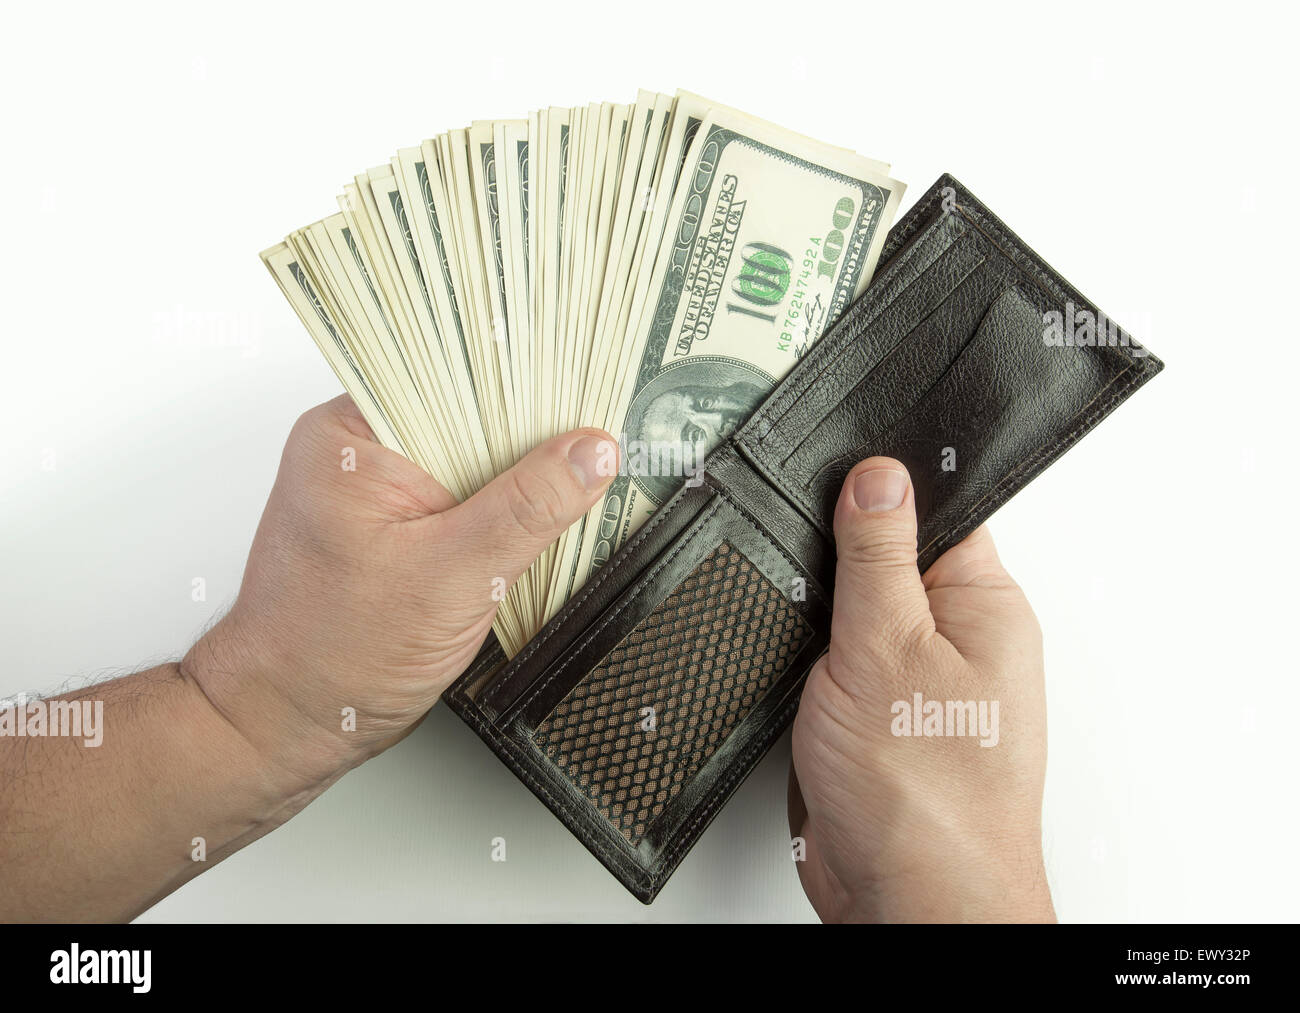 L'ouverture du portefeuille rempli d'argent Photo Stock - Alamy